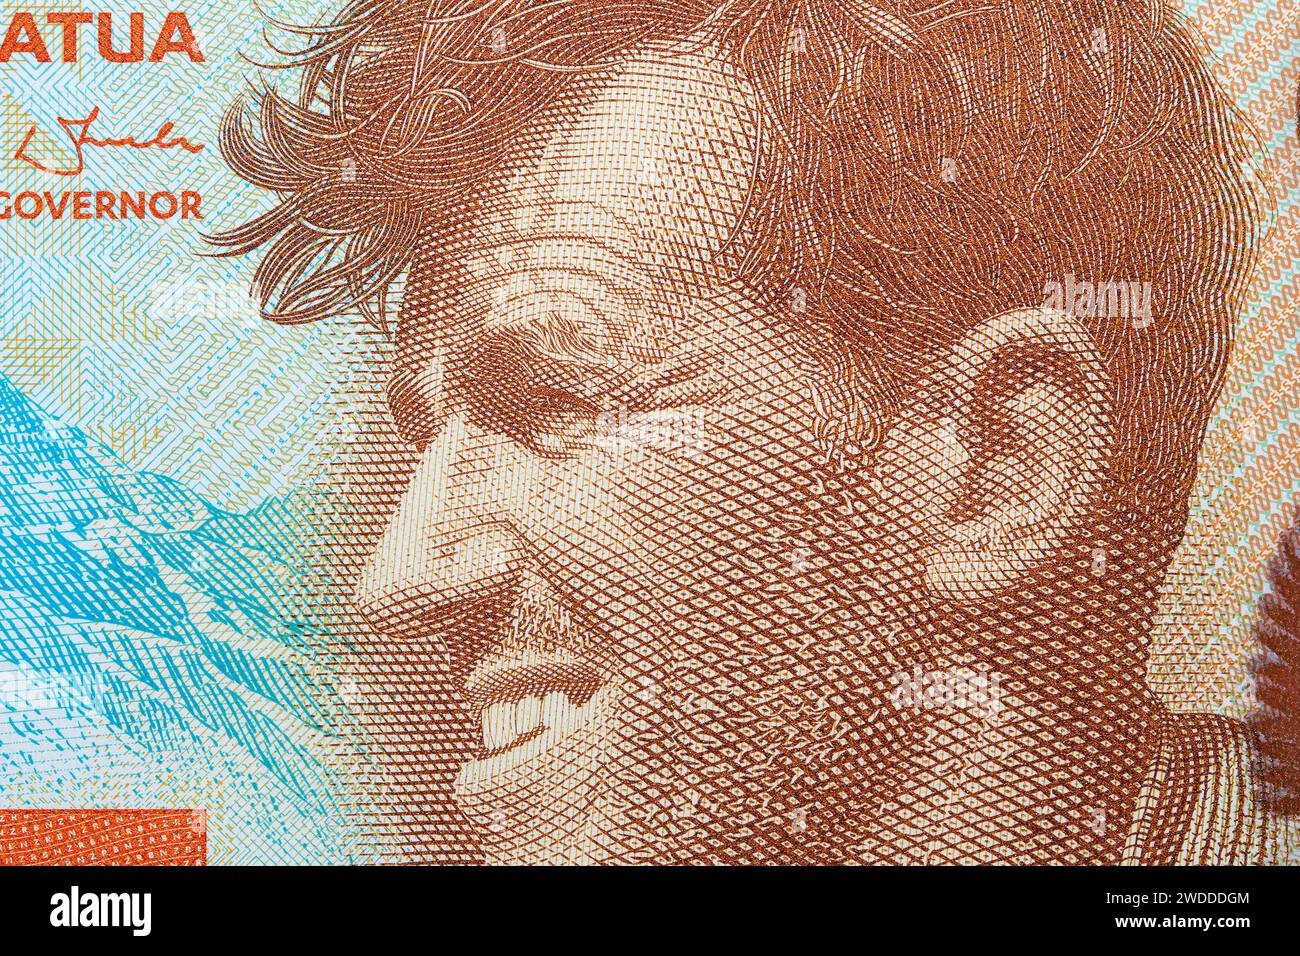 Edmund Hillary un portrait cloeseup de l'argent néo-zélandais - dollar Banque D'Images